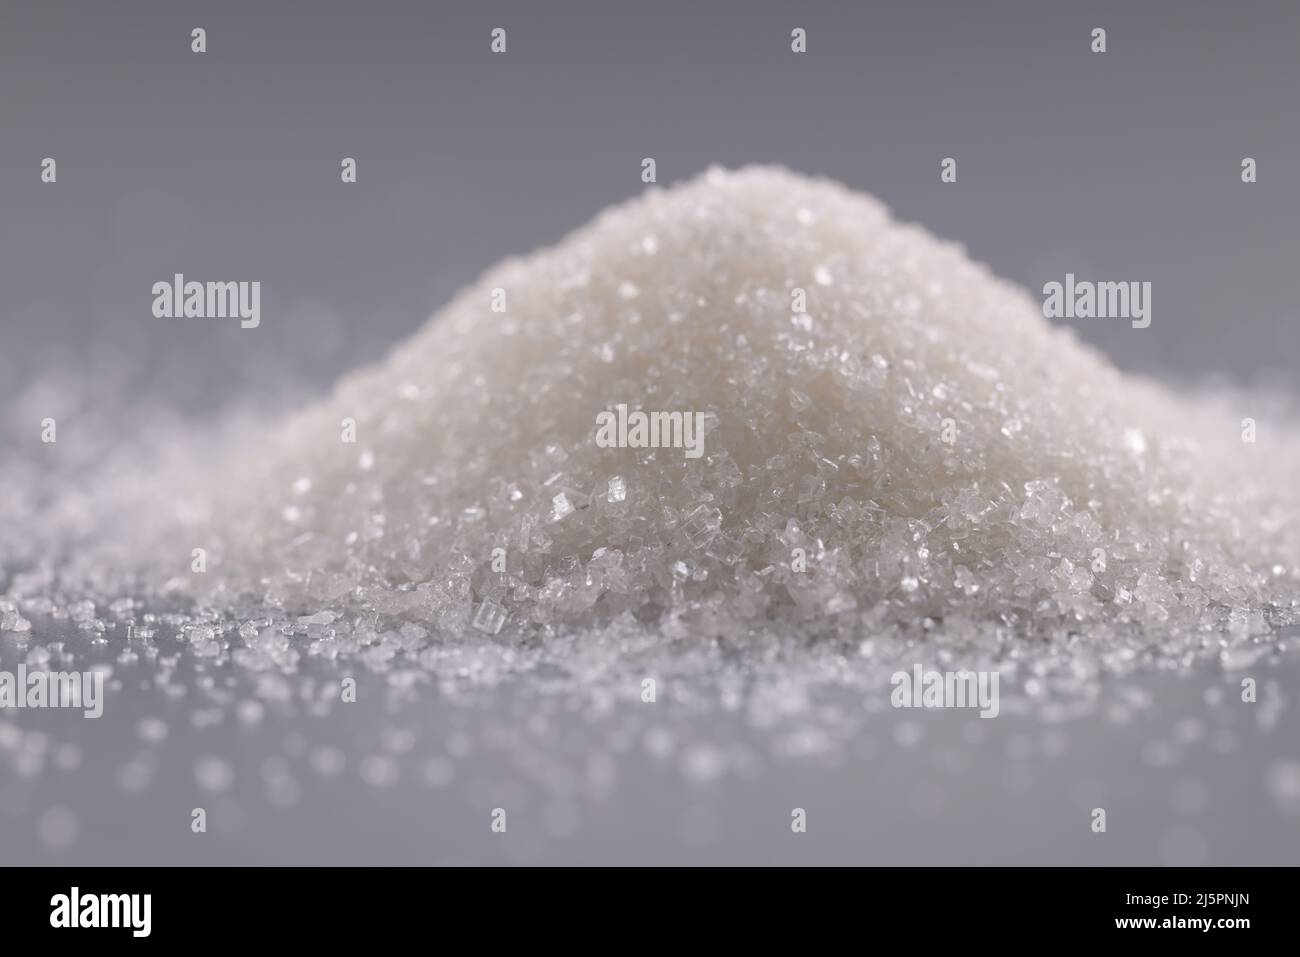 Mucchio di cristalli di zucchero sulla superficie grigia, mucchio di polvere dolce da aggiungere in piatti Foto Stock